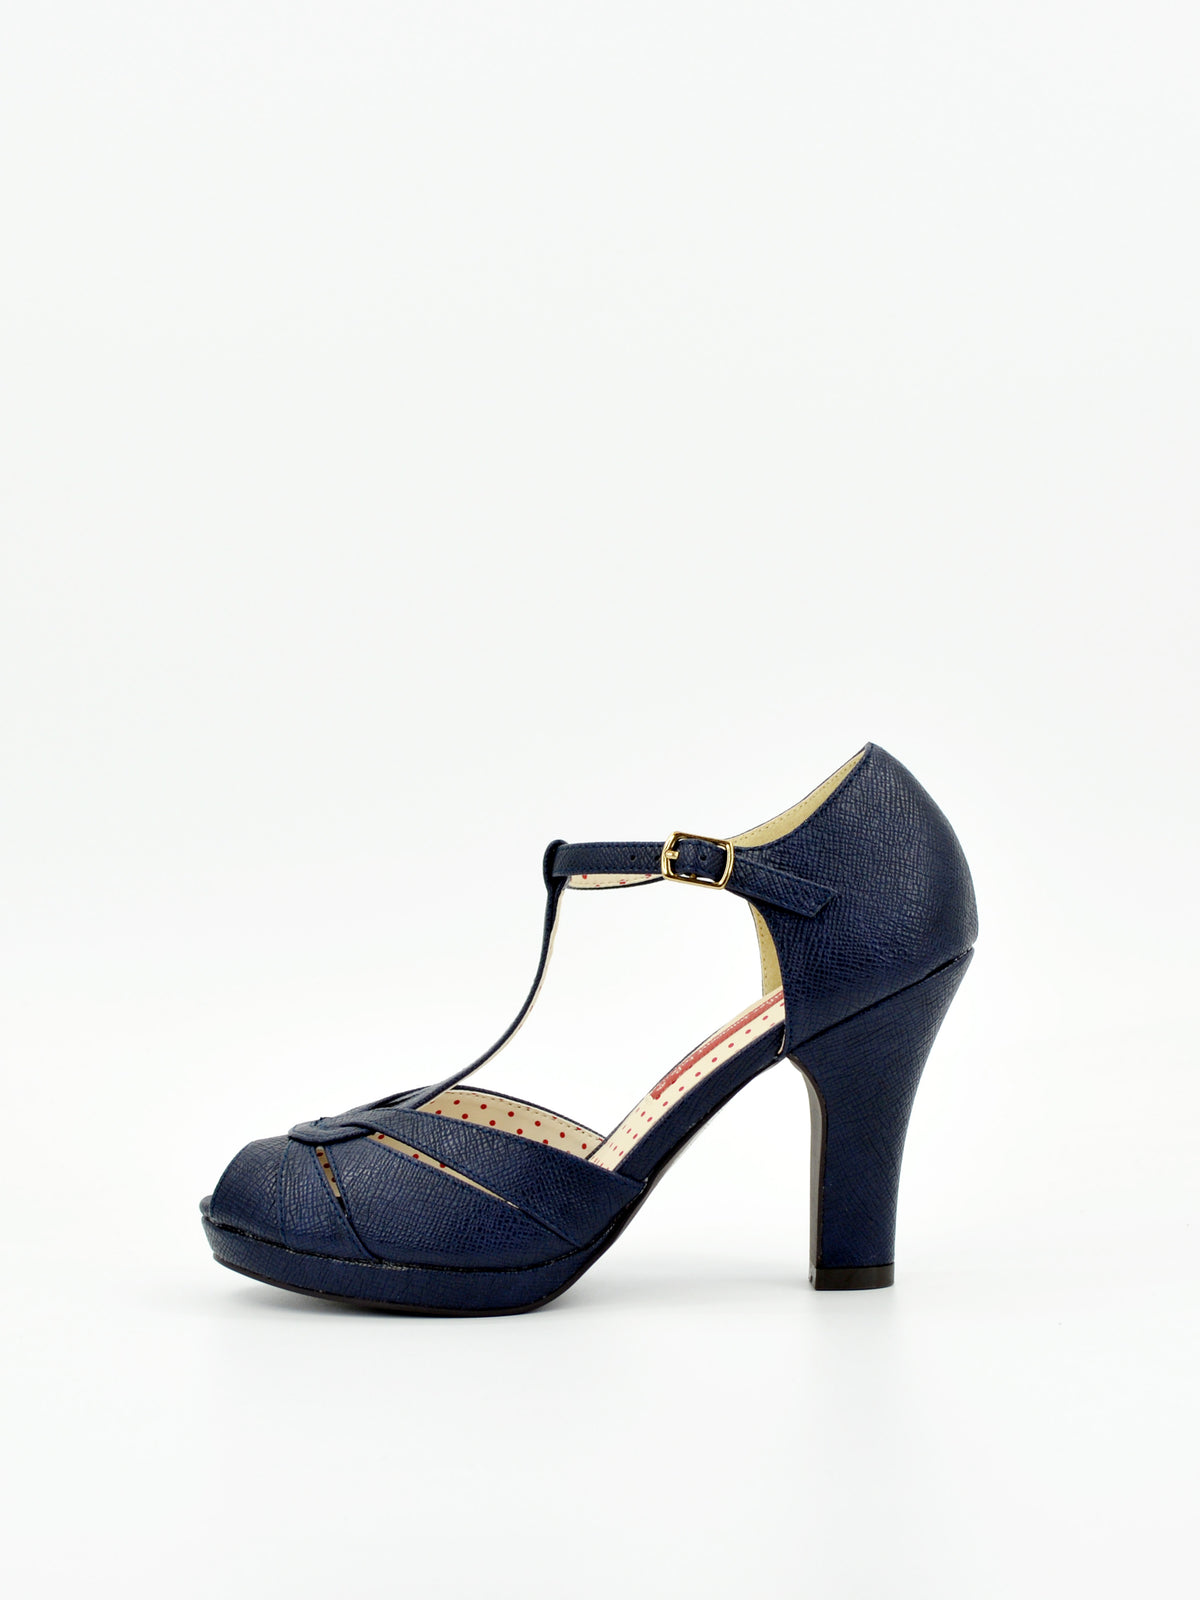 Lacey Sienna – B.A.I.T. Footwear